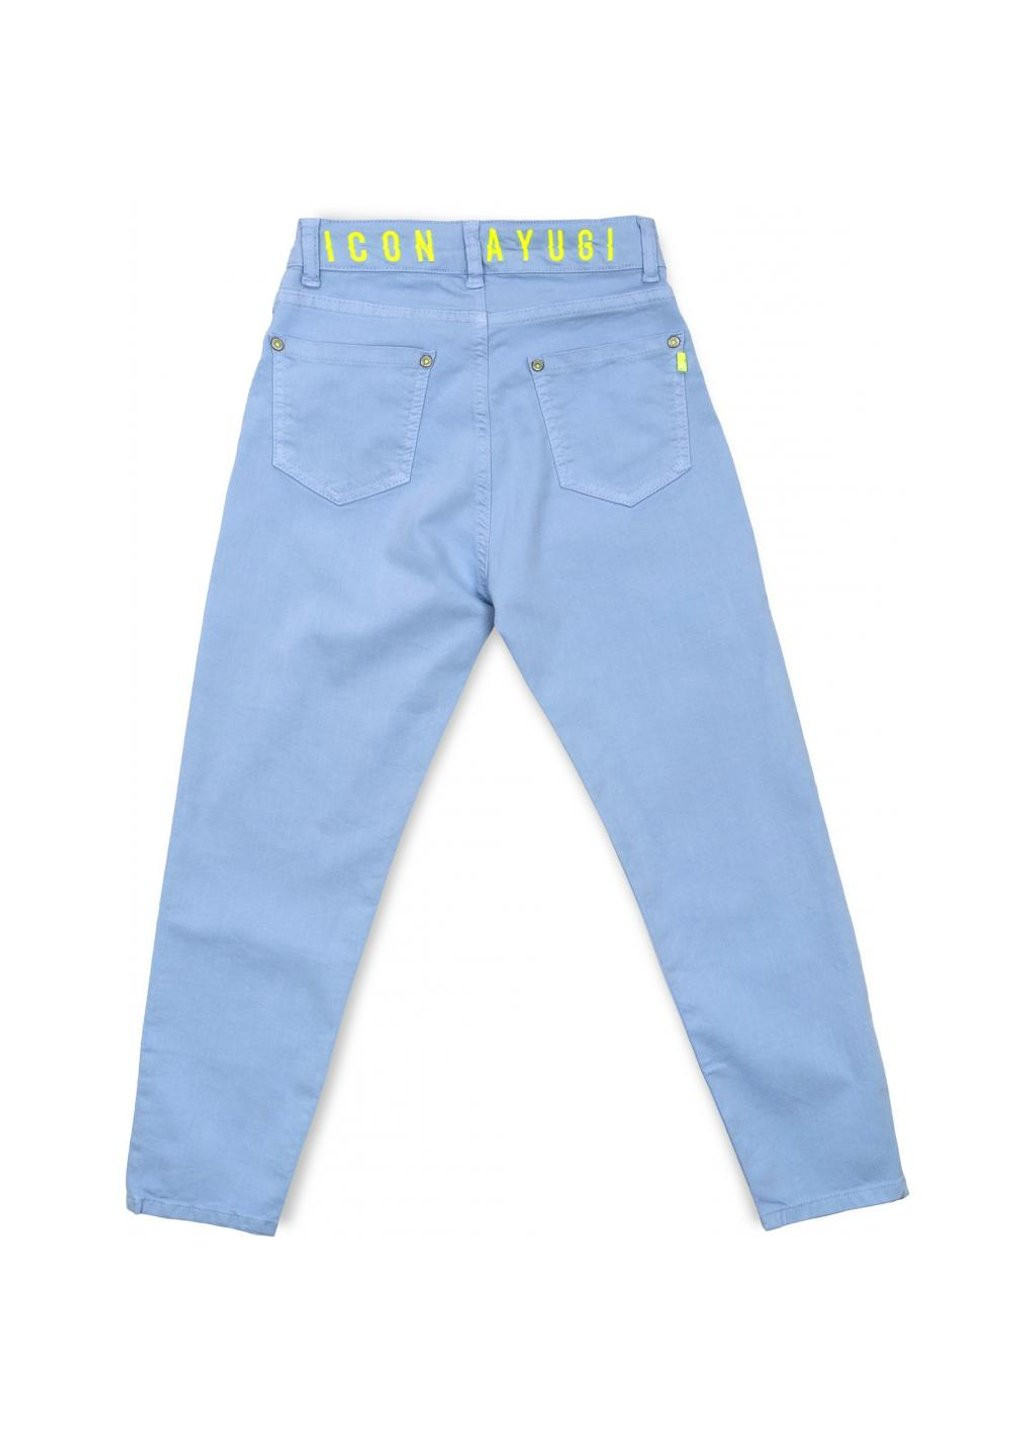 Голубые демисезонные джинсы с высокой талией (9255-134g-blue) A-yugi